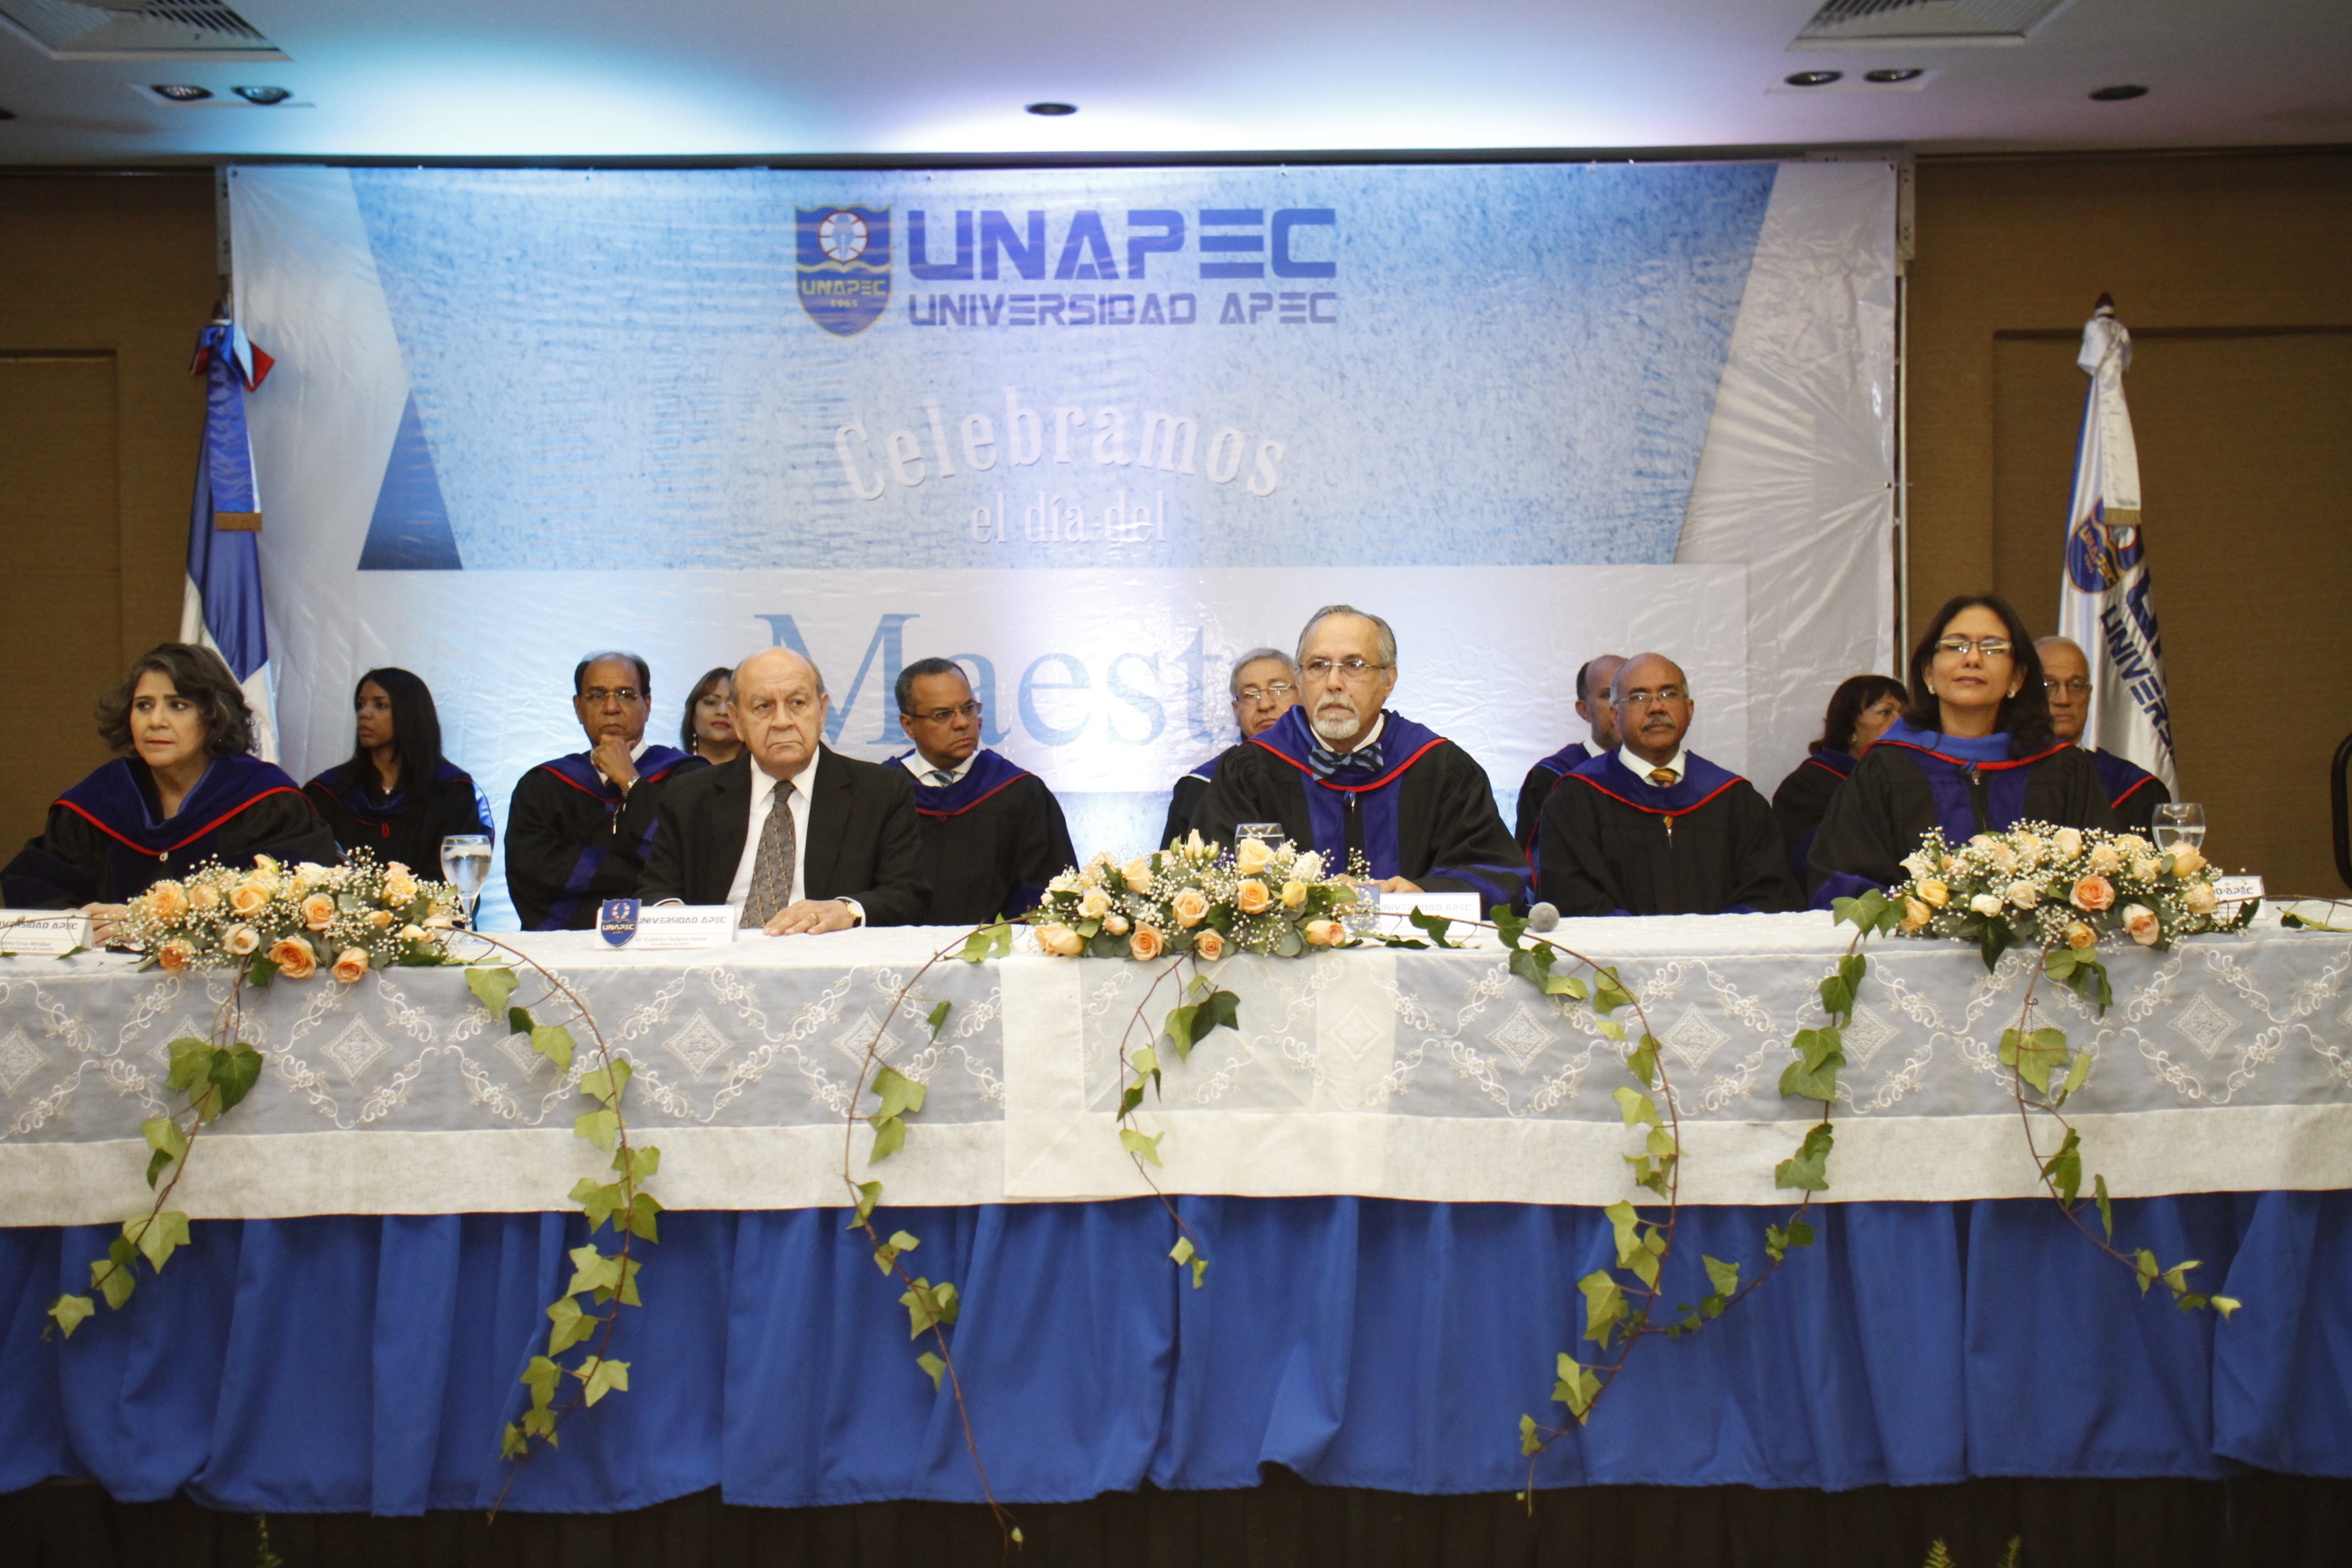 La Universidad APEC –UNAPEC- vistió sus galas académicas para reconocer la excelencia de sus docentes